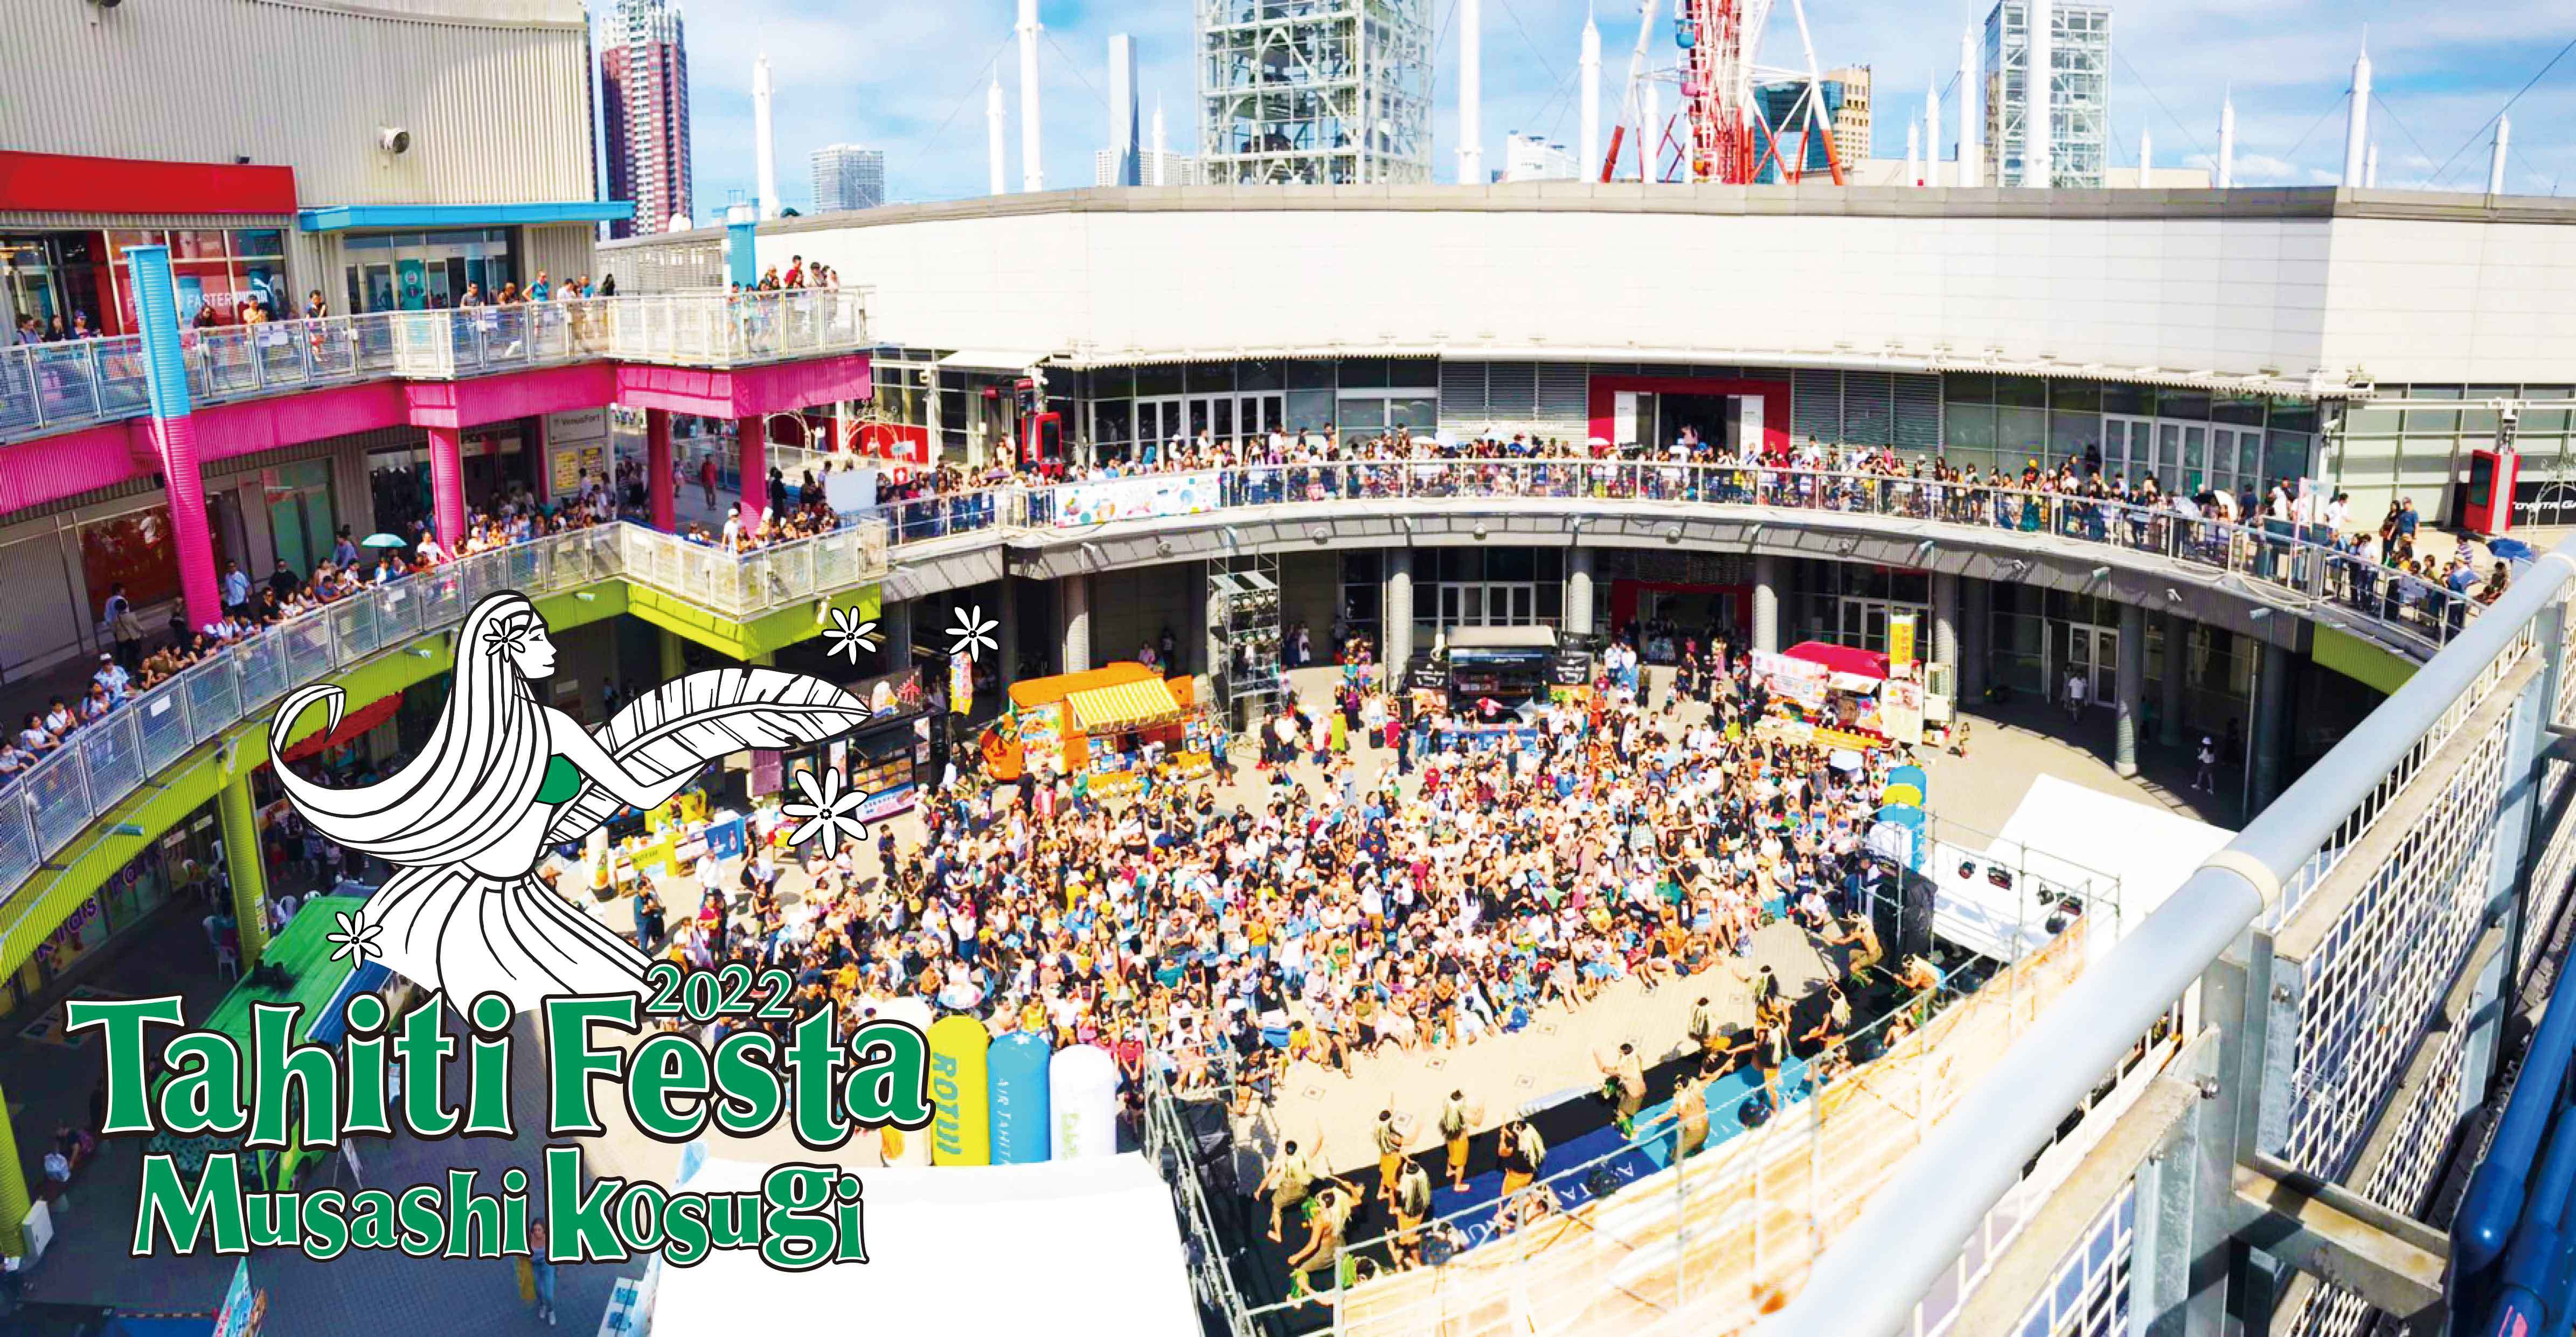 20万人以上を動員した「Tahiti Festa」が、
シルバーウィークに武蔵小杉で9月17日～19日開催！
「Tahiti Festa 2022 Musashikosugi」